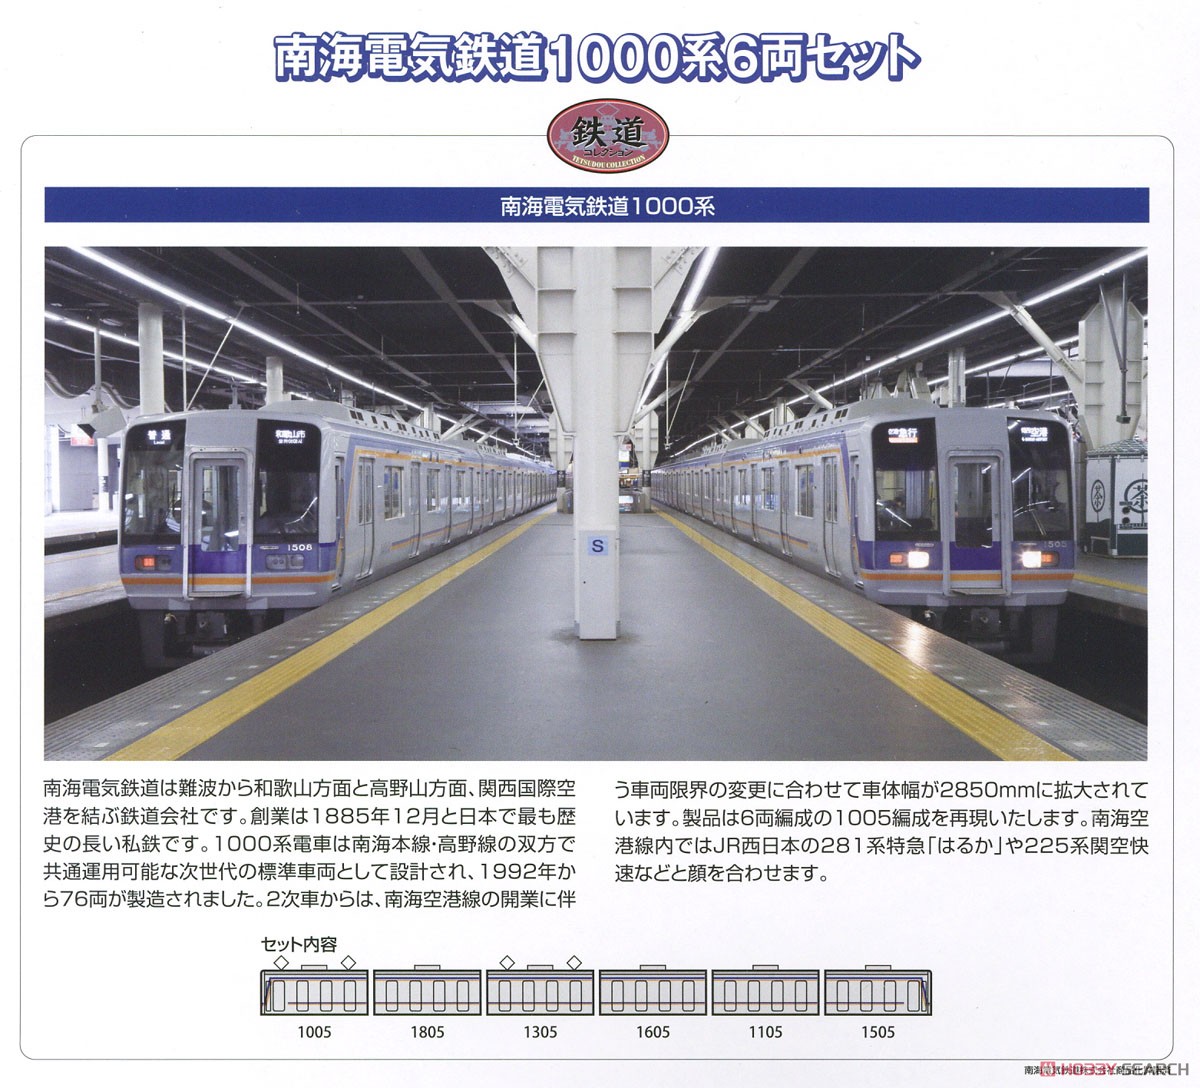 鉄道コレクション 南海電気鉄道 1000系 (6両セット) (鉄道模型) 解説1